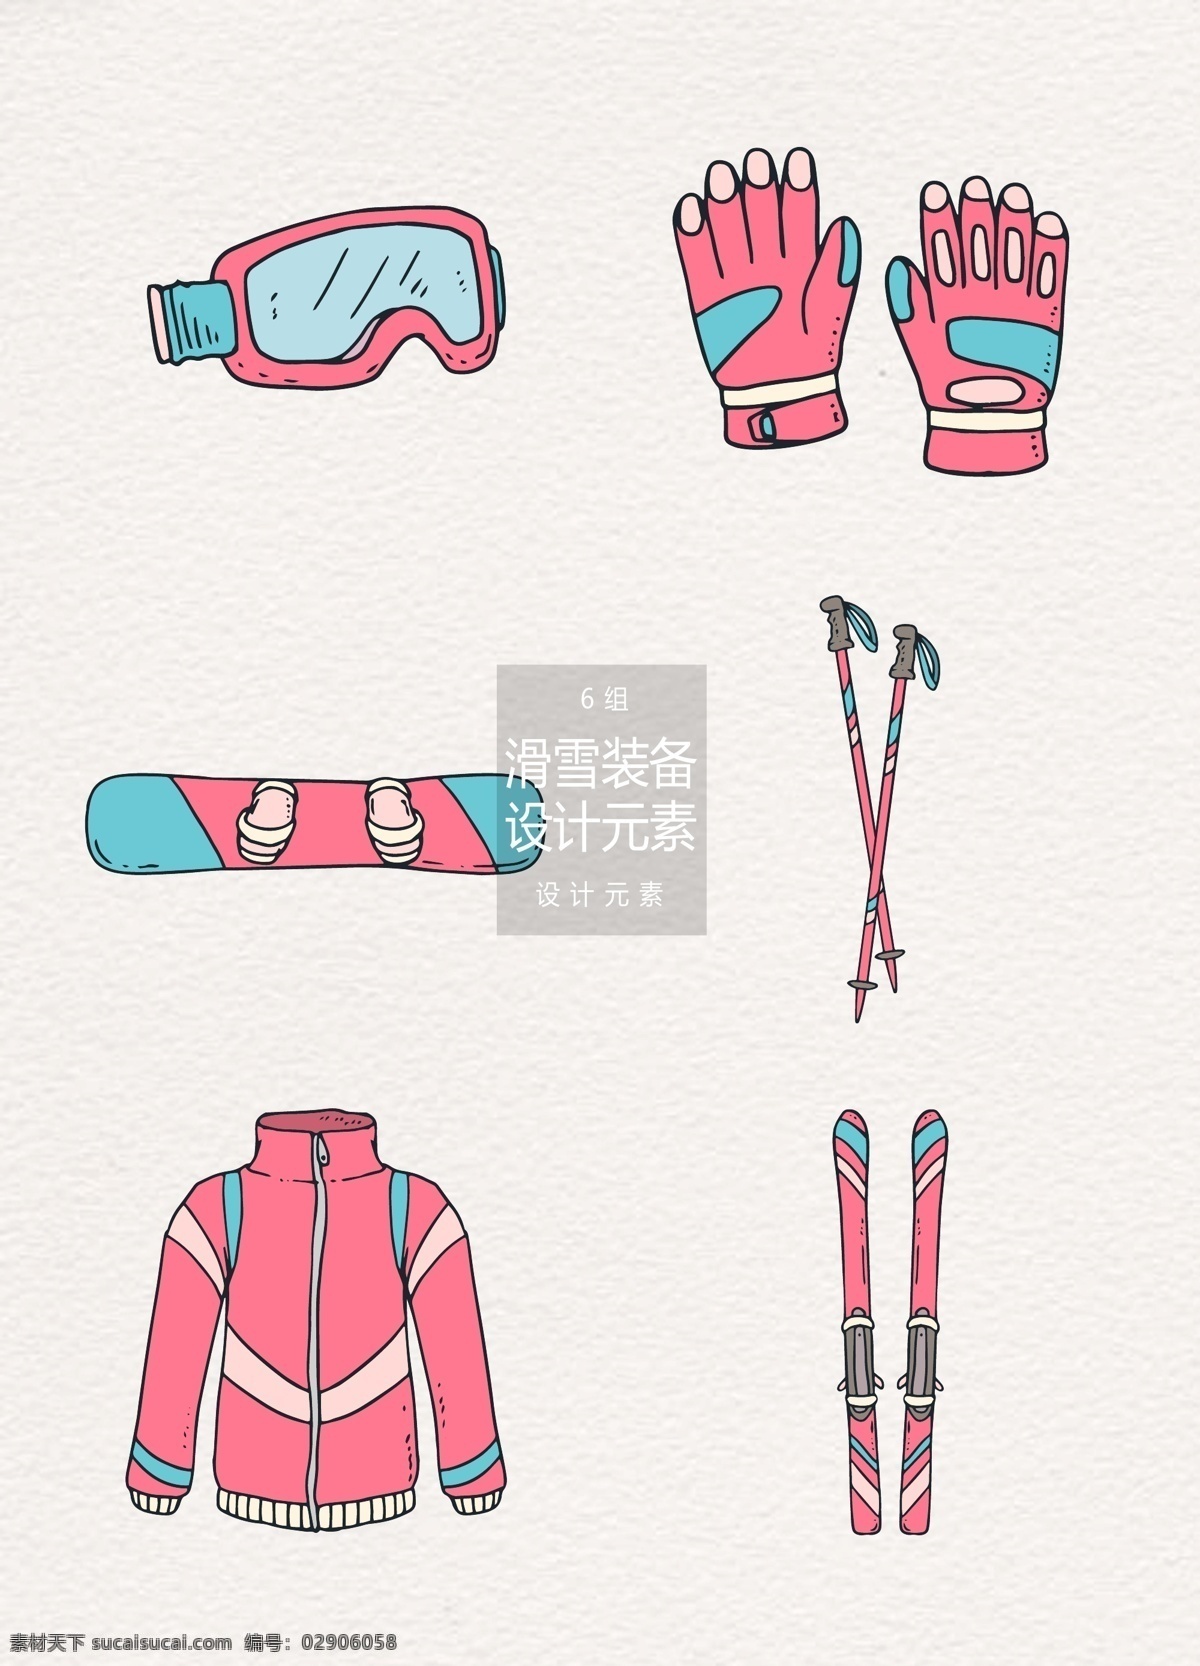 手绘 粉色 滑雪 装备 元素 设计元素 手套 眼罩 滑板 滑雪装备 手绘滑雪装备